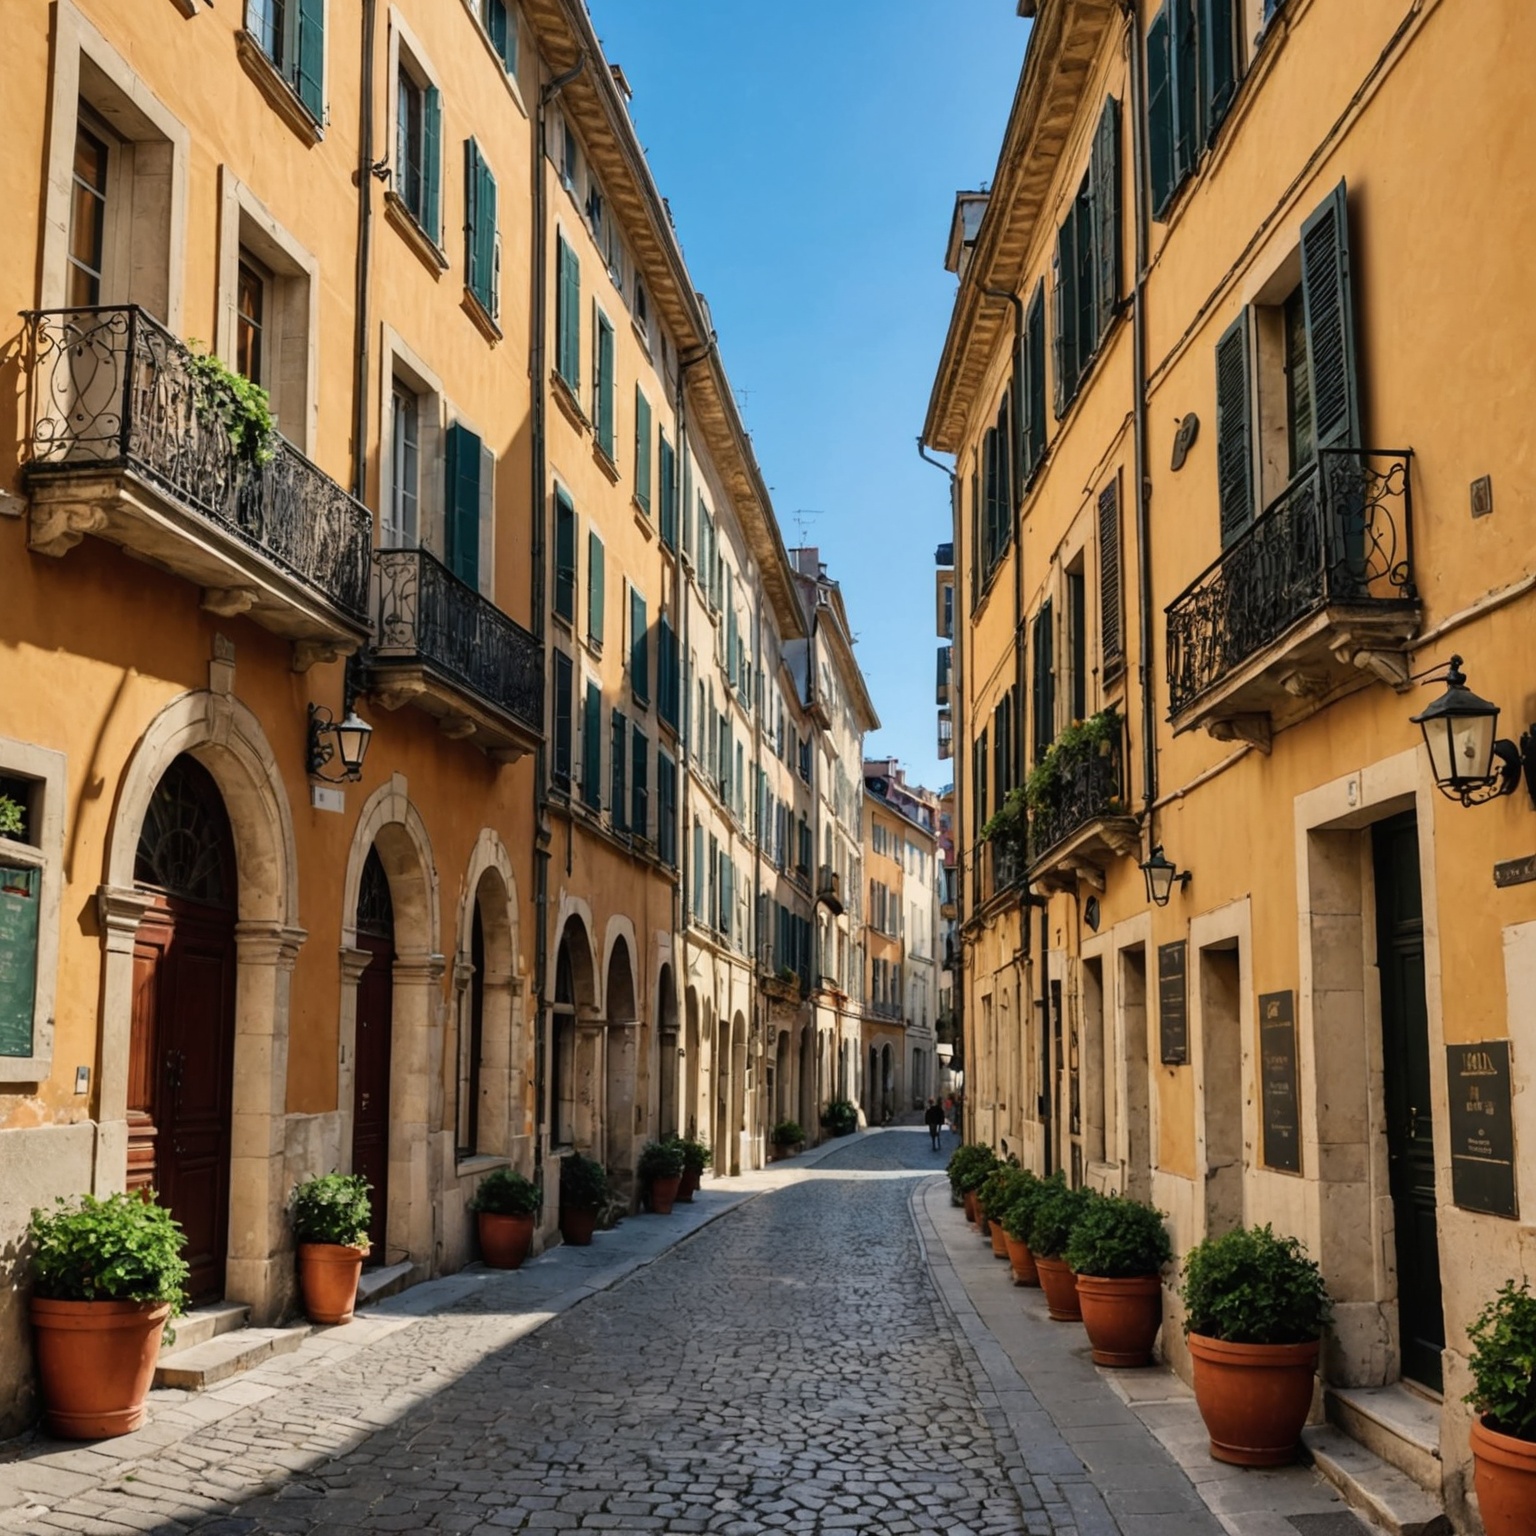 Location Immobilière Lyon: Guide Complet pour Trouver ou Louer sereinement – Vivre à Nice